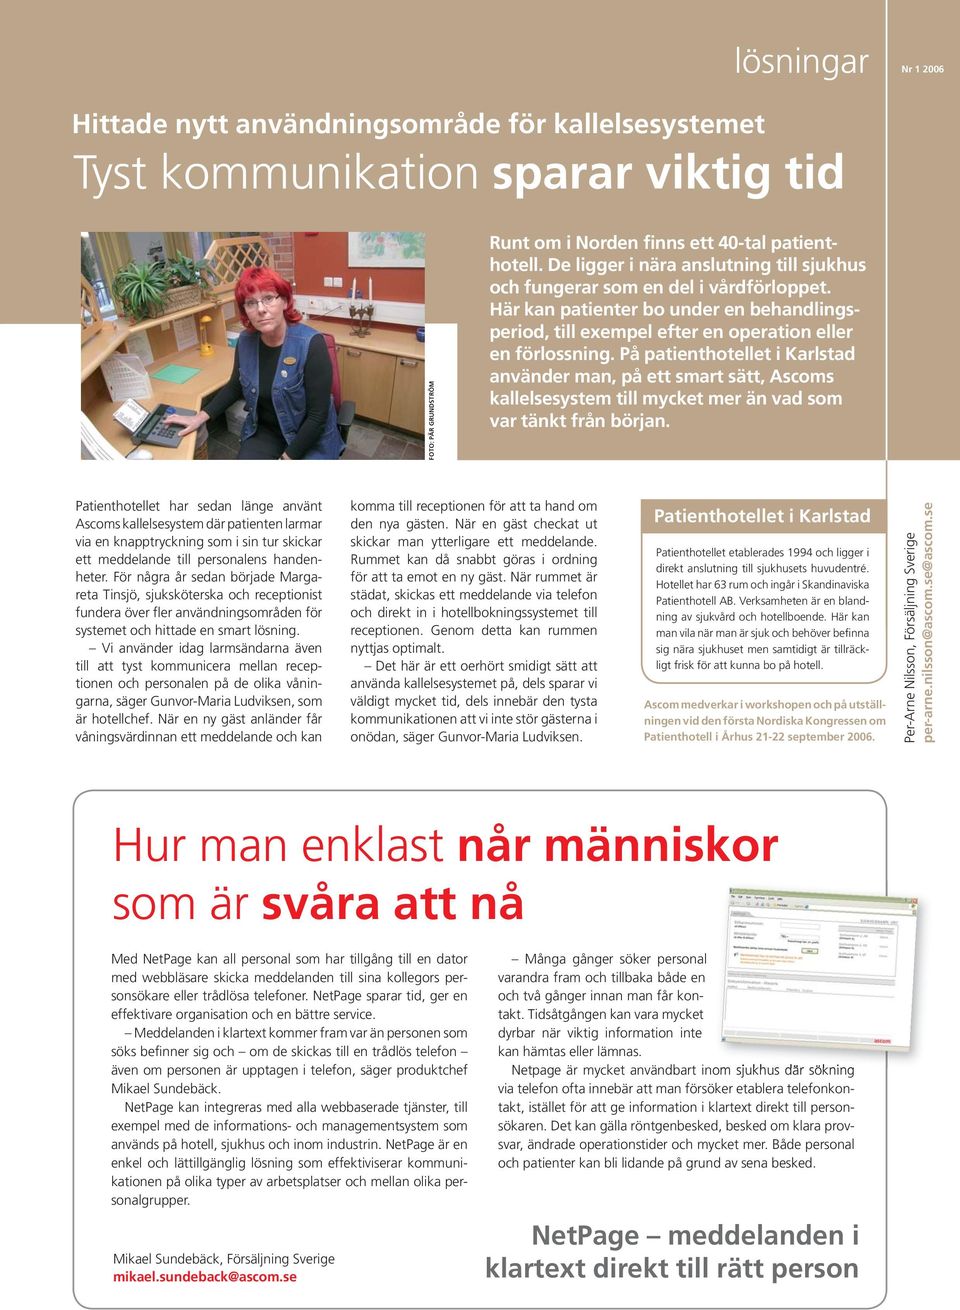 På patienthotellet i Karlstad använder man, på ett smart sätt, Ascoms kallelsesystem till mycket mer än vad som var tänkt från början.